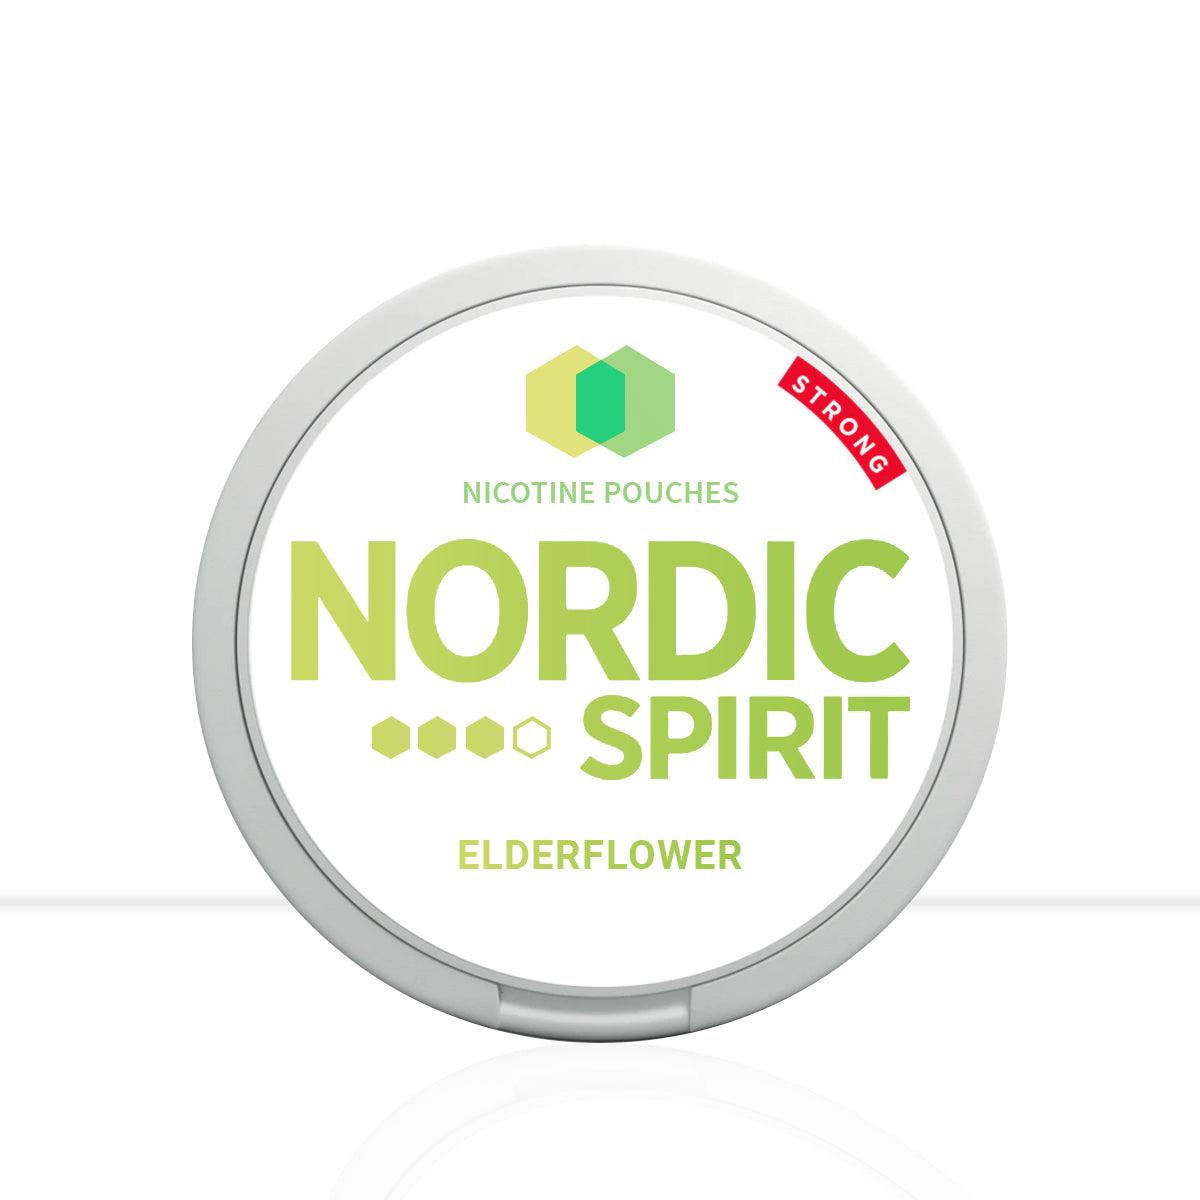 Nordic Spirit Nicotine Pouches Elderflower